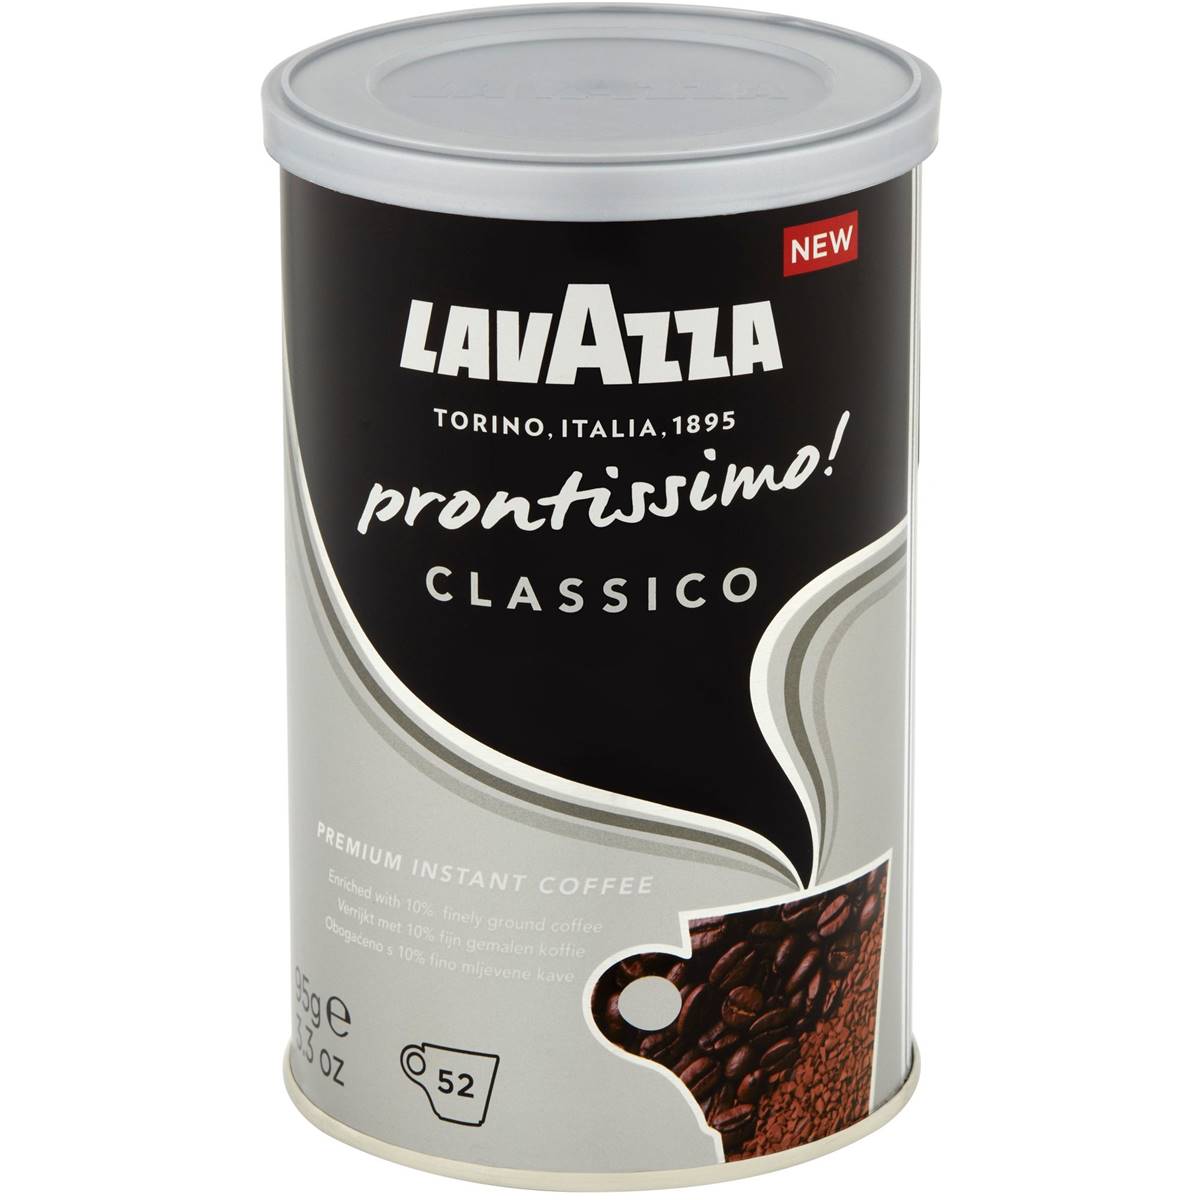 Lavazza Prontissimo Classico Freeze Dried Coffee